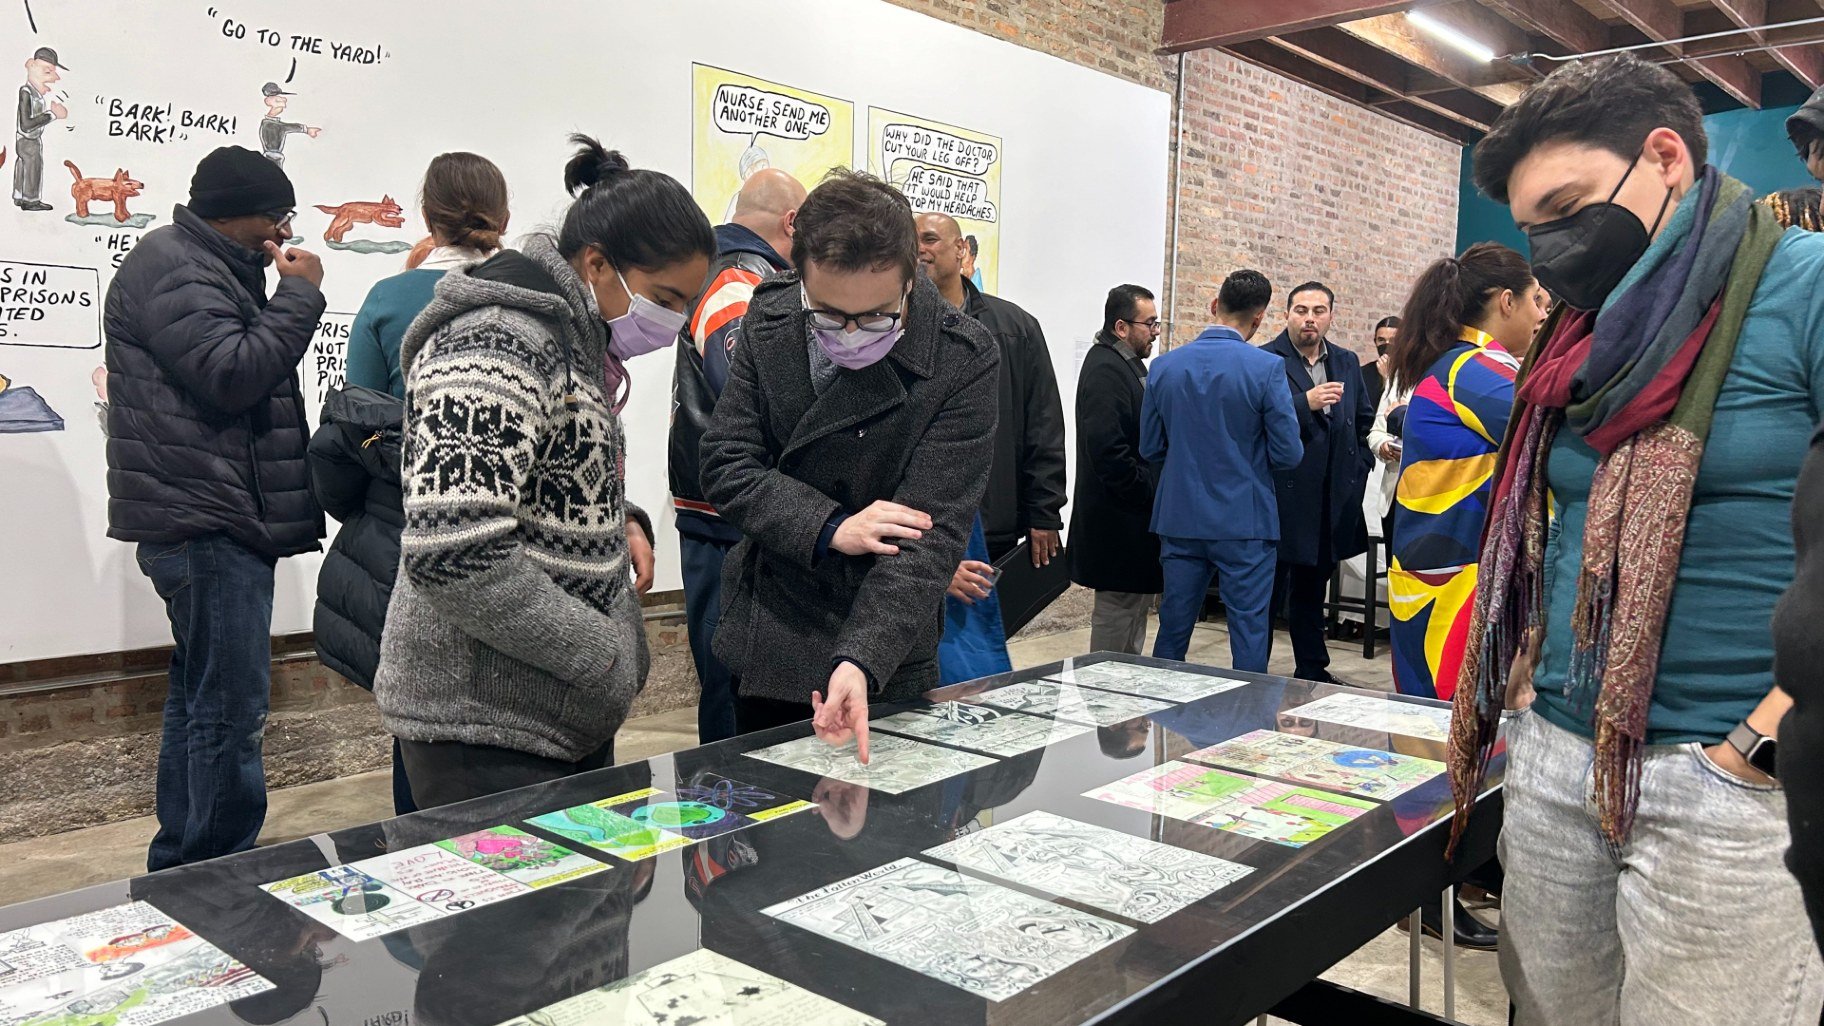 新的画廊和社区中心将囚犯艺术家与芝加哥社区联系在一起：“我们将艺术作为联系纽带”